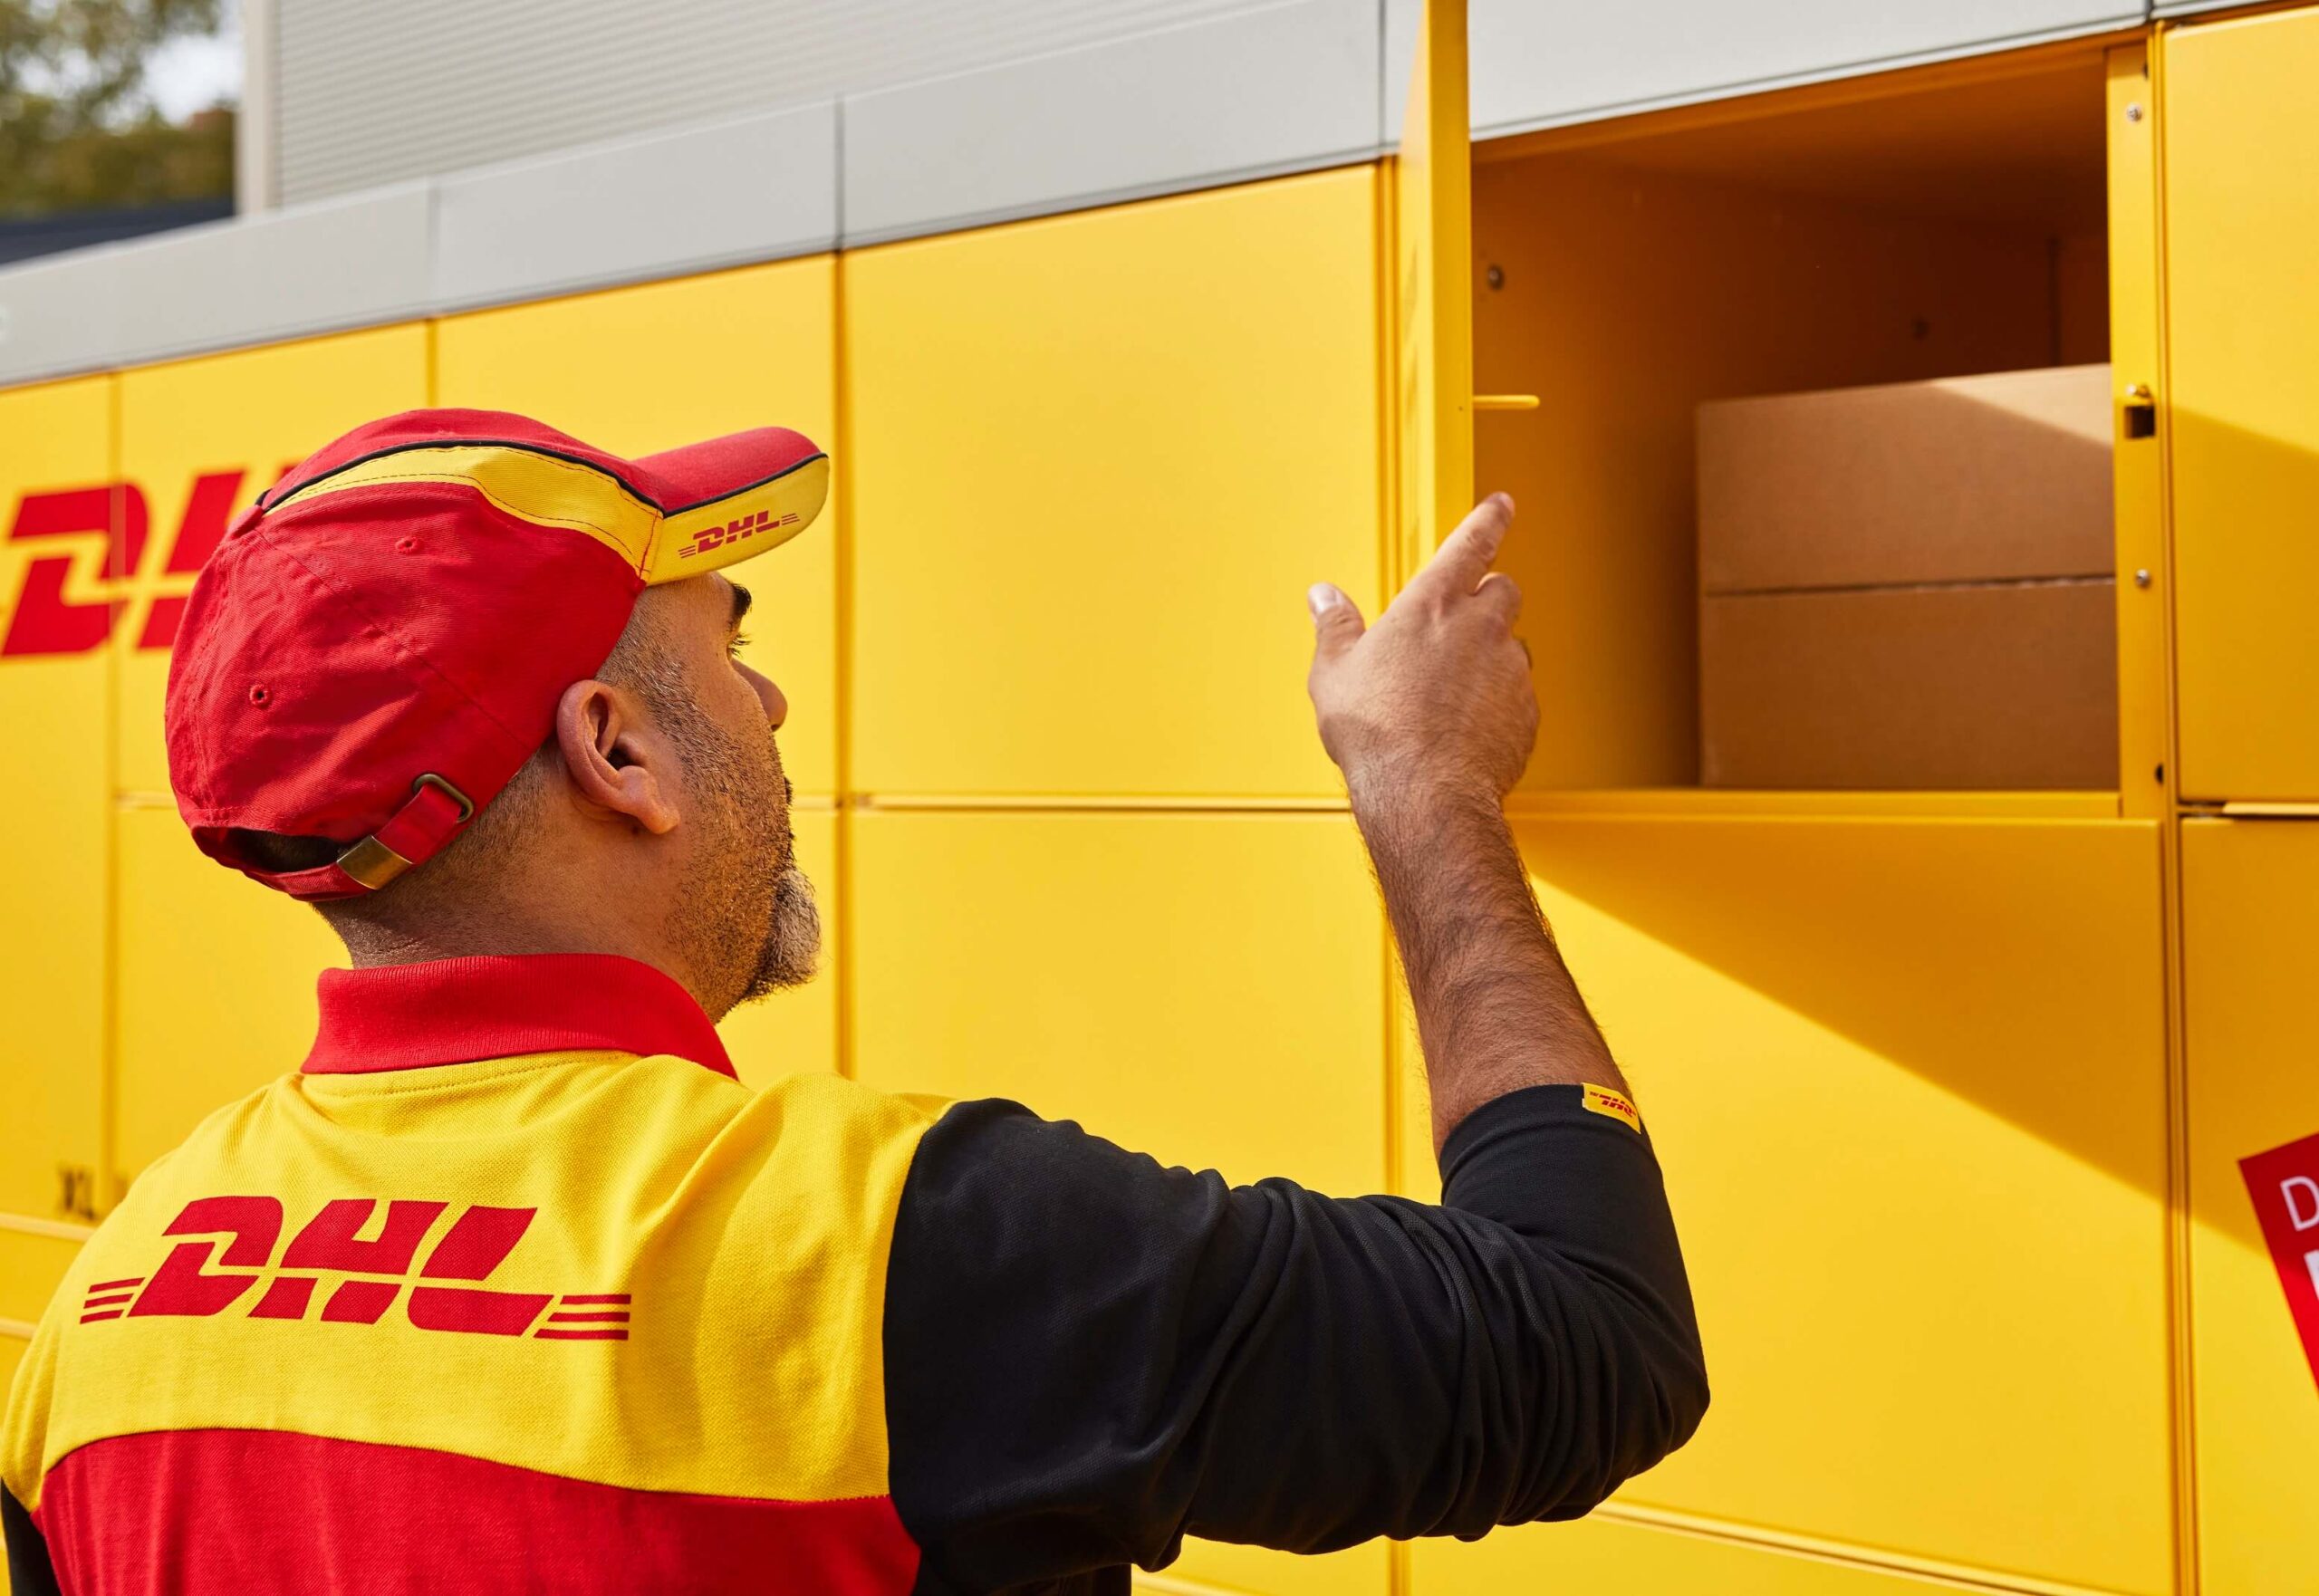 DHL wprowadza sieć własnych automatów paczkowych POP Box